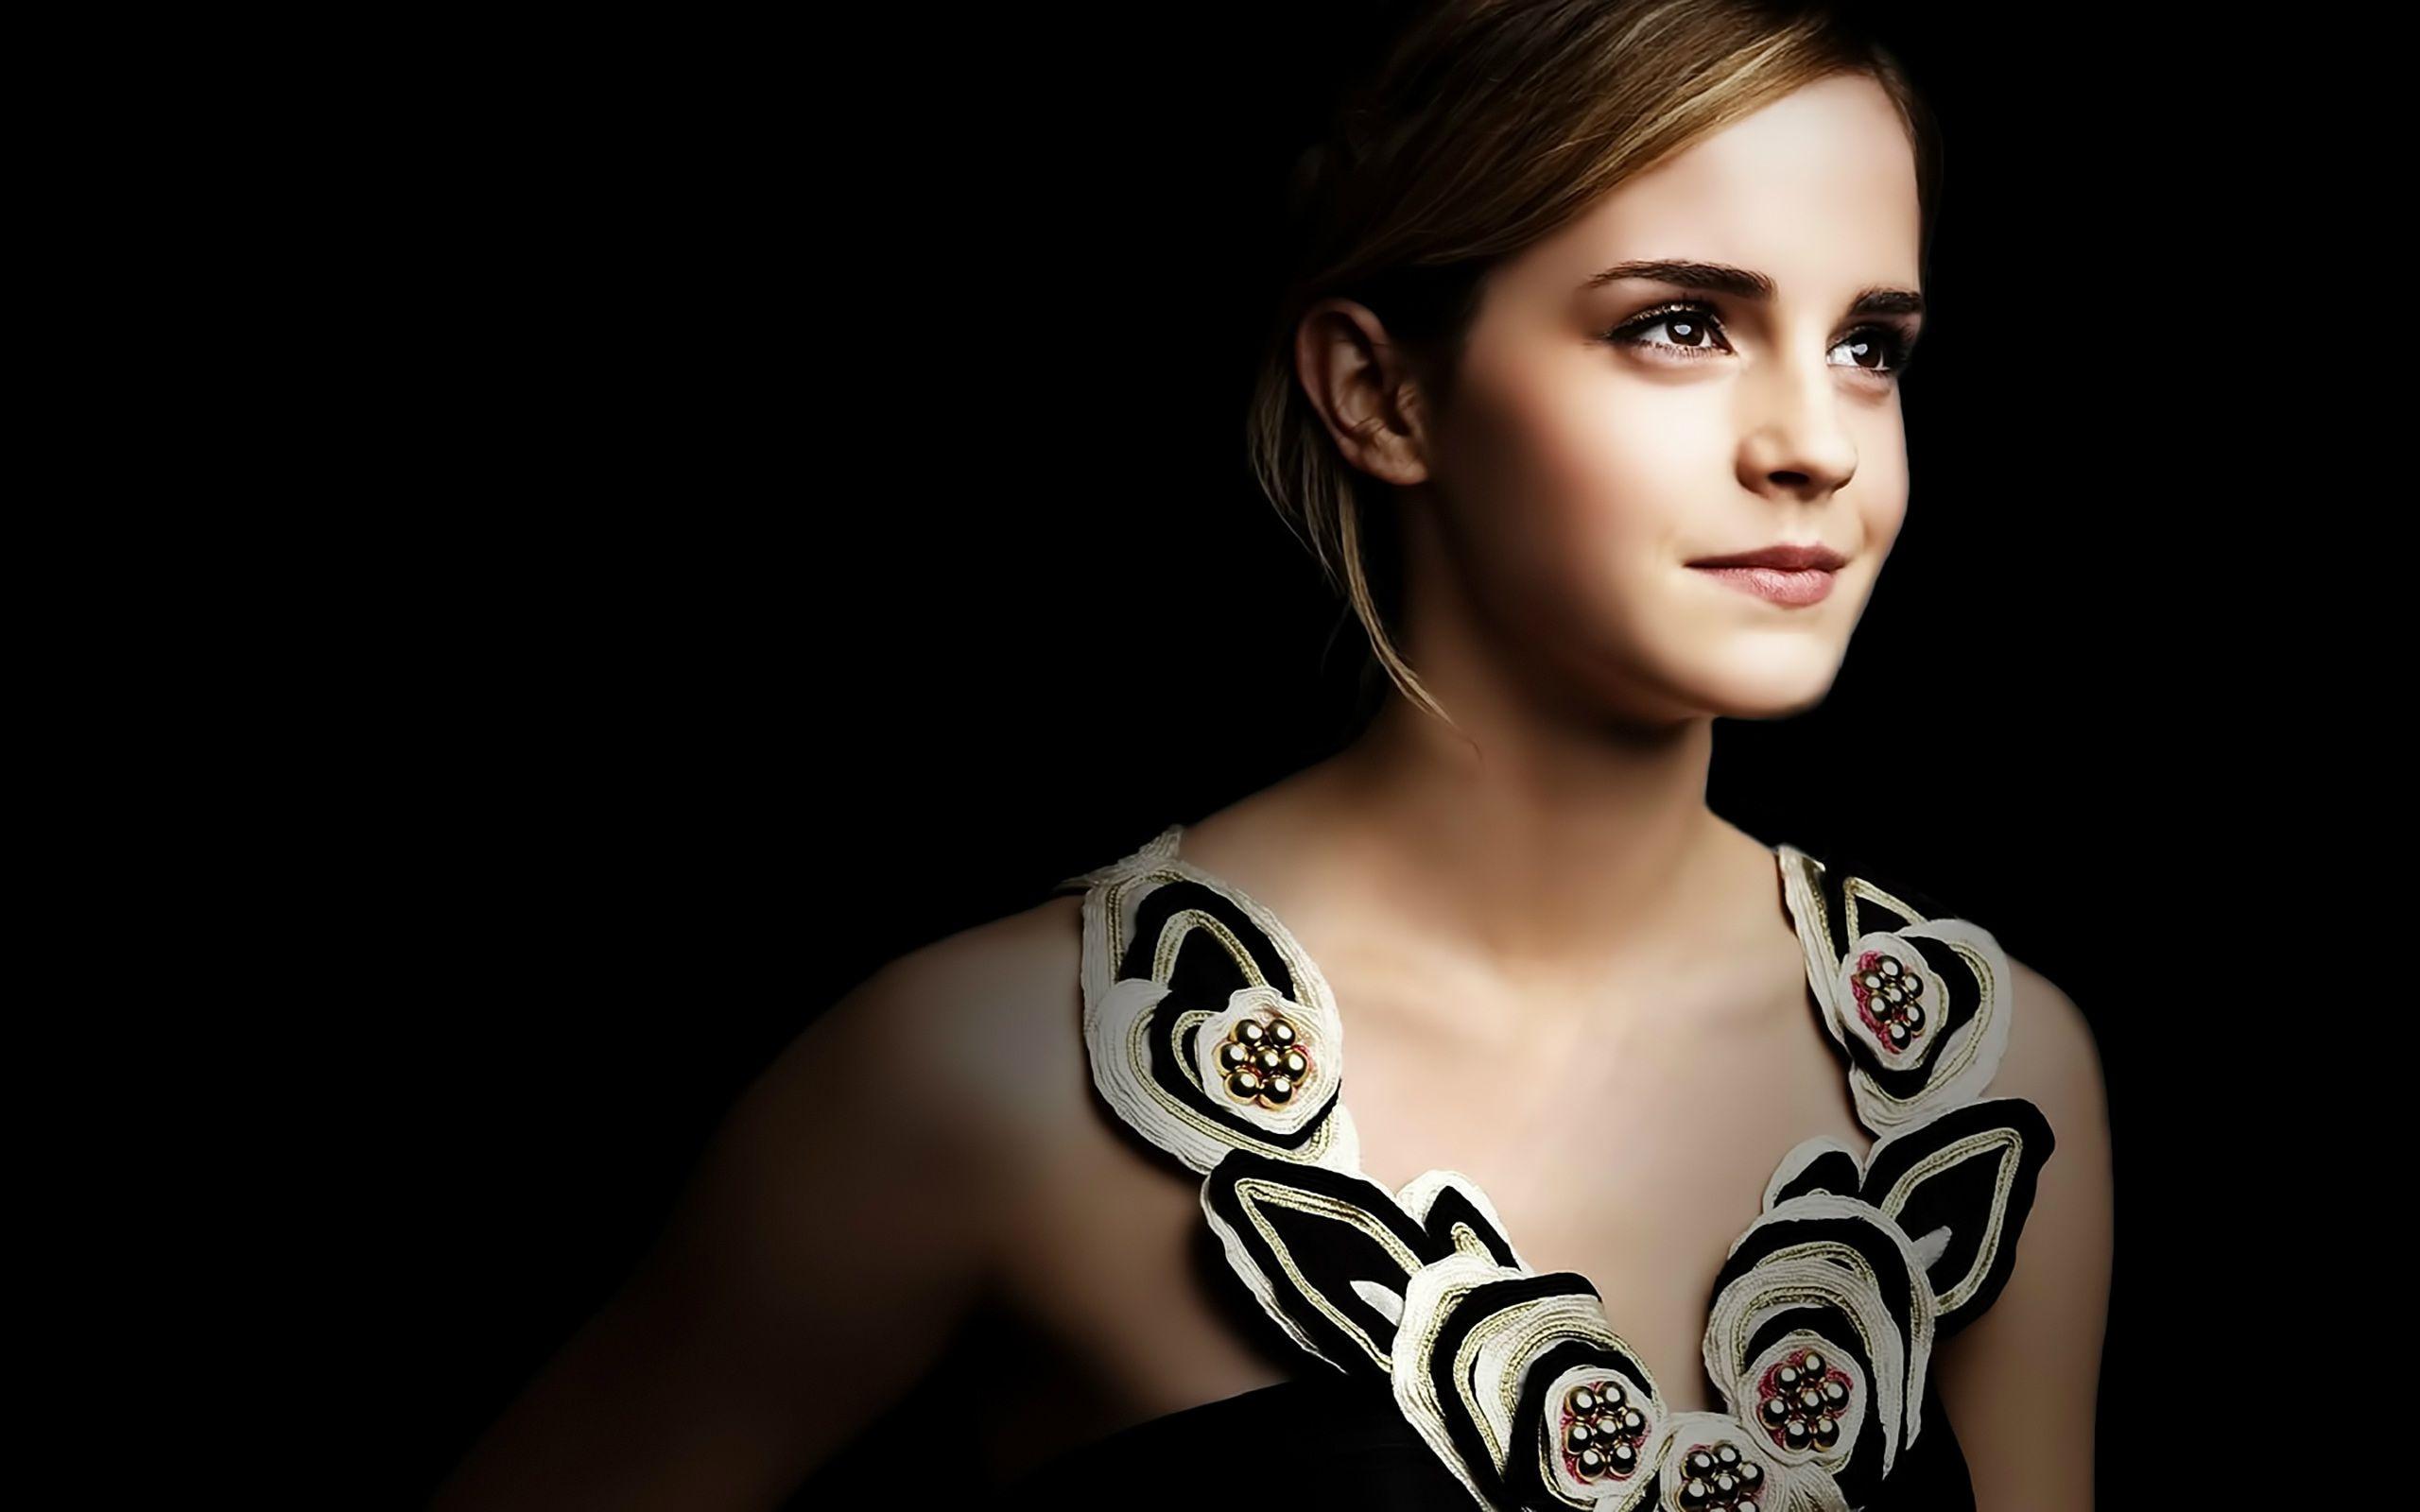 Emma Watson Latest Image HD Wallpapers